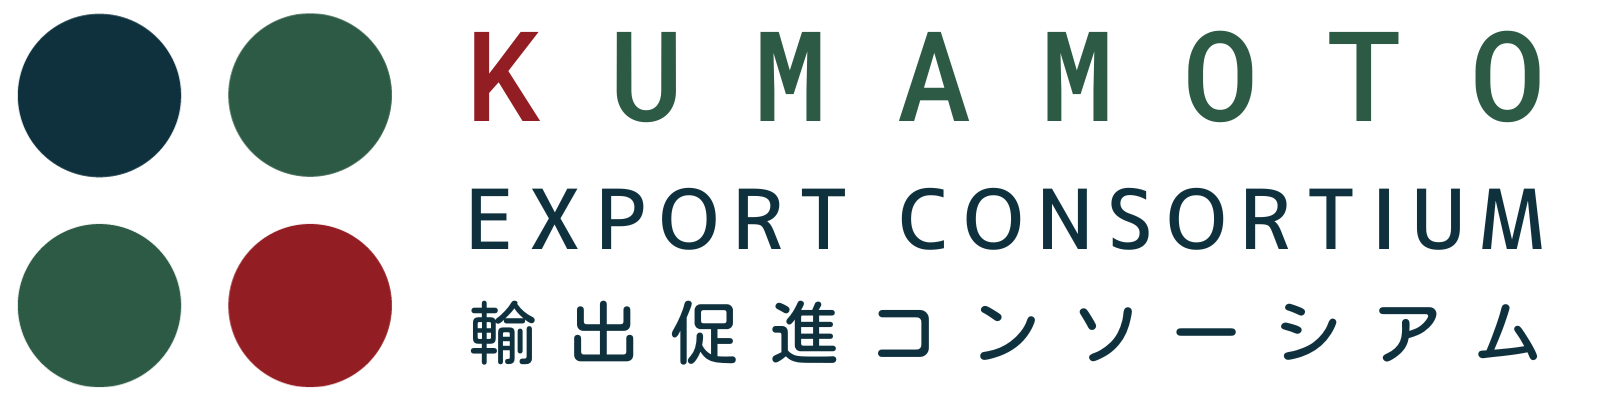 KUMAMOTO Export Consortium